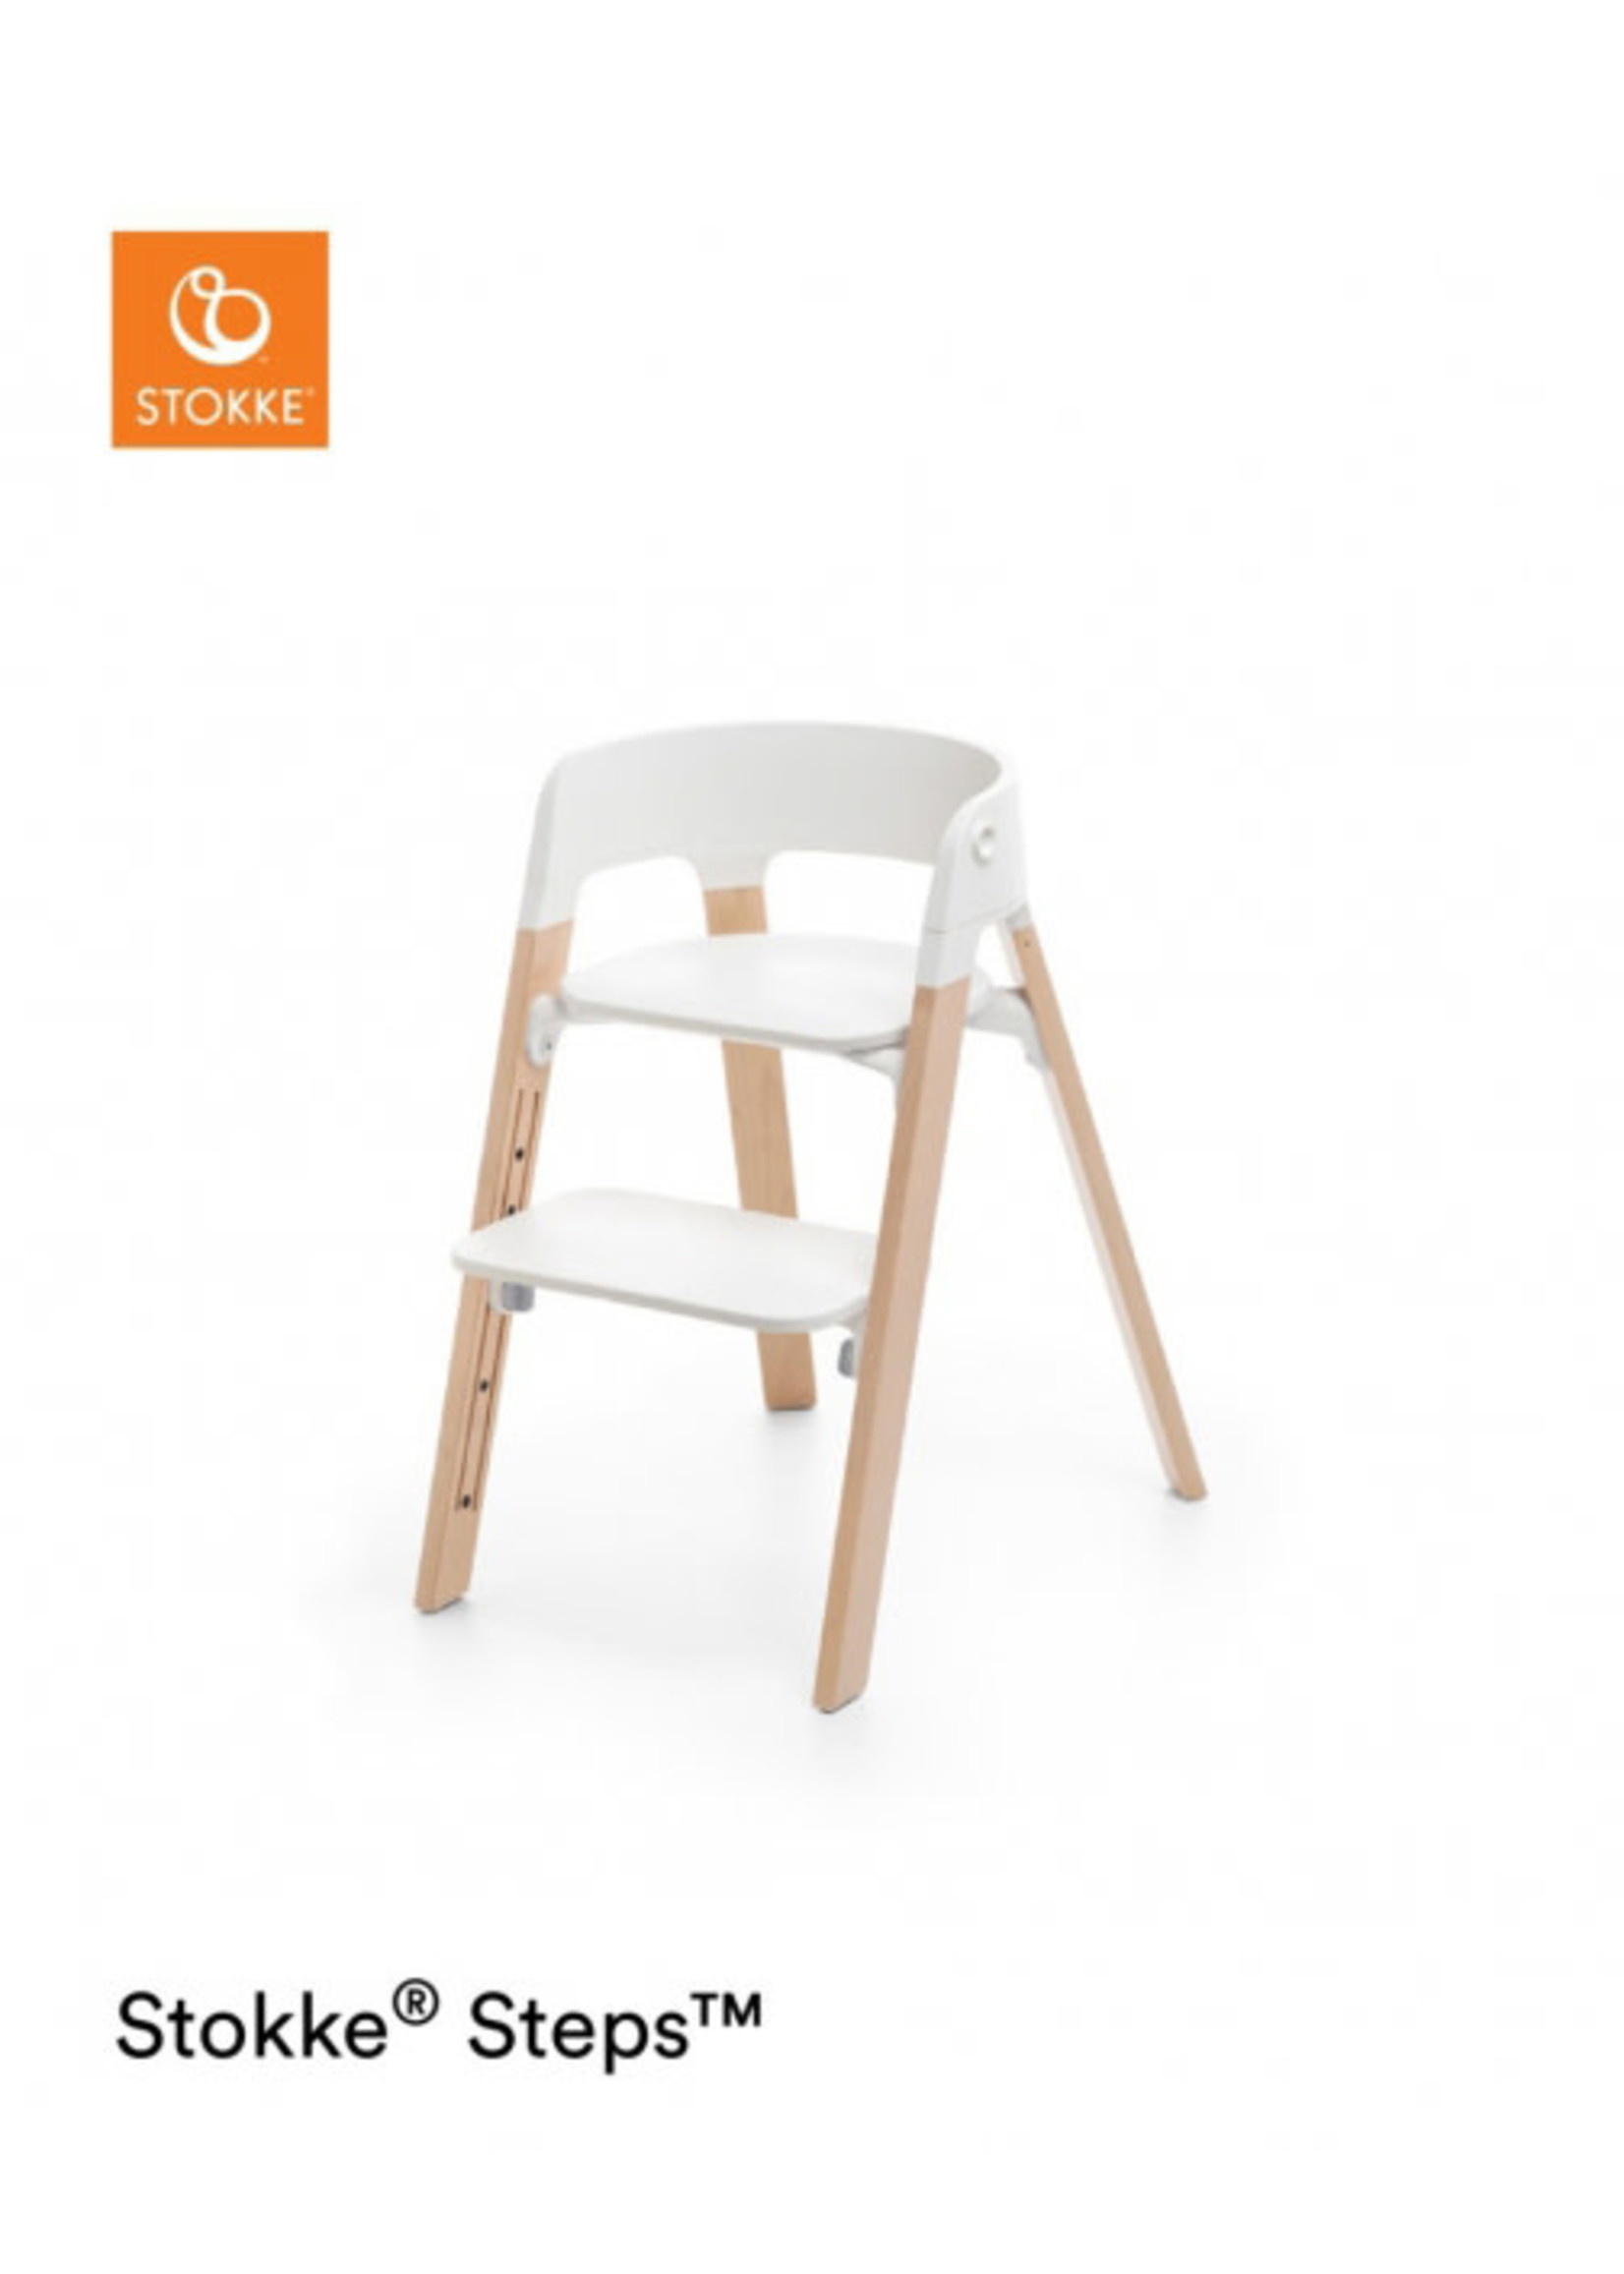 Stokke Stokke Steps Chair White/Natural